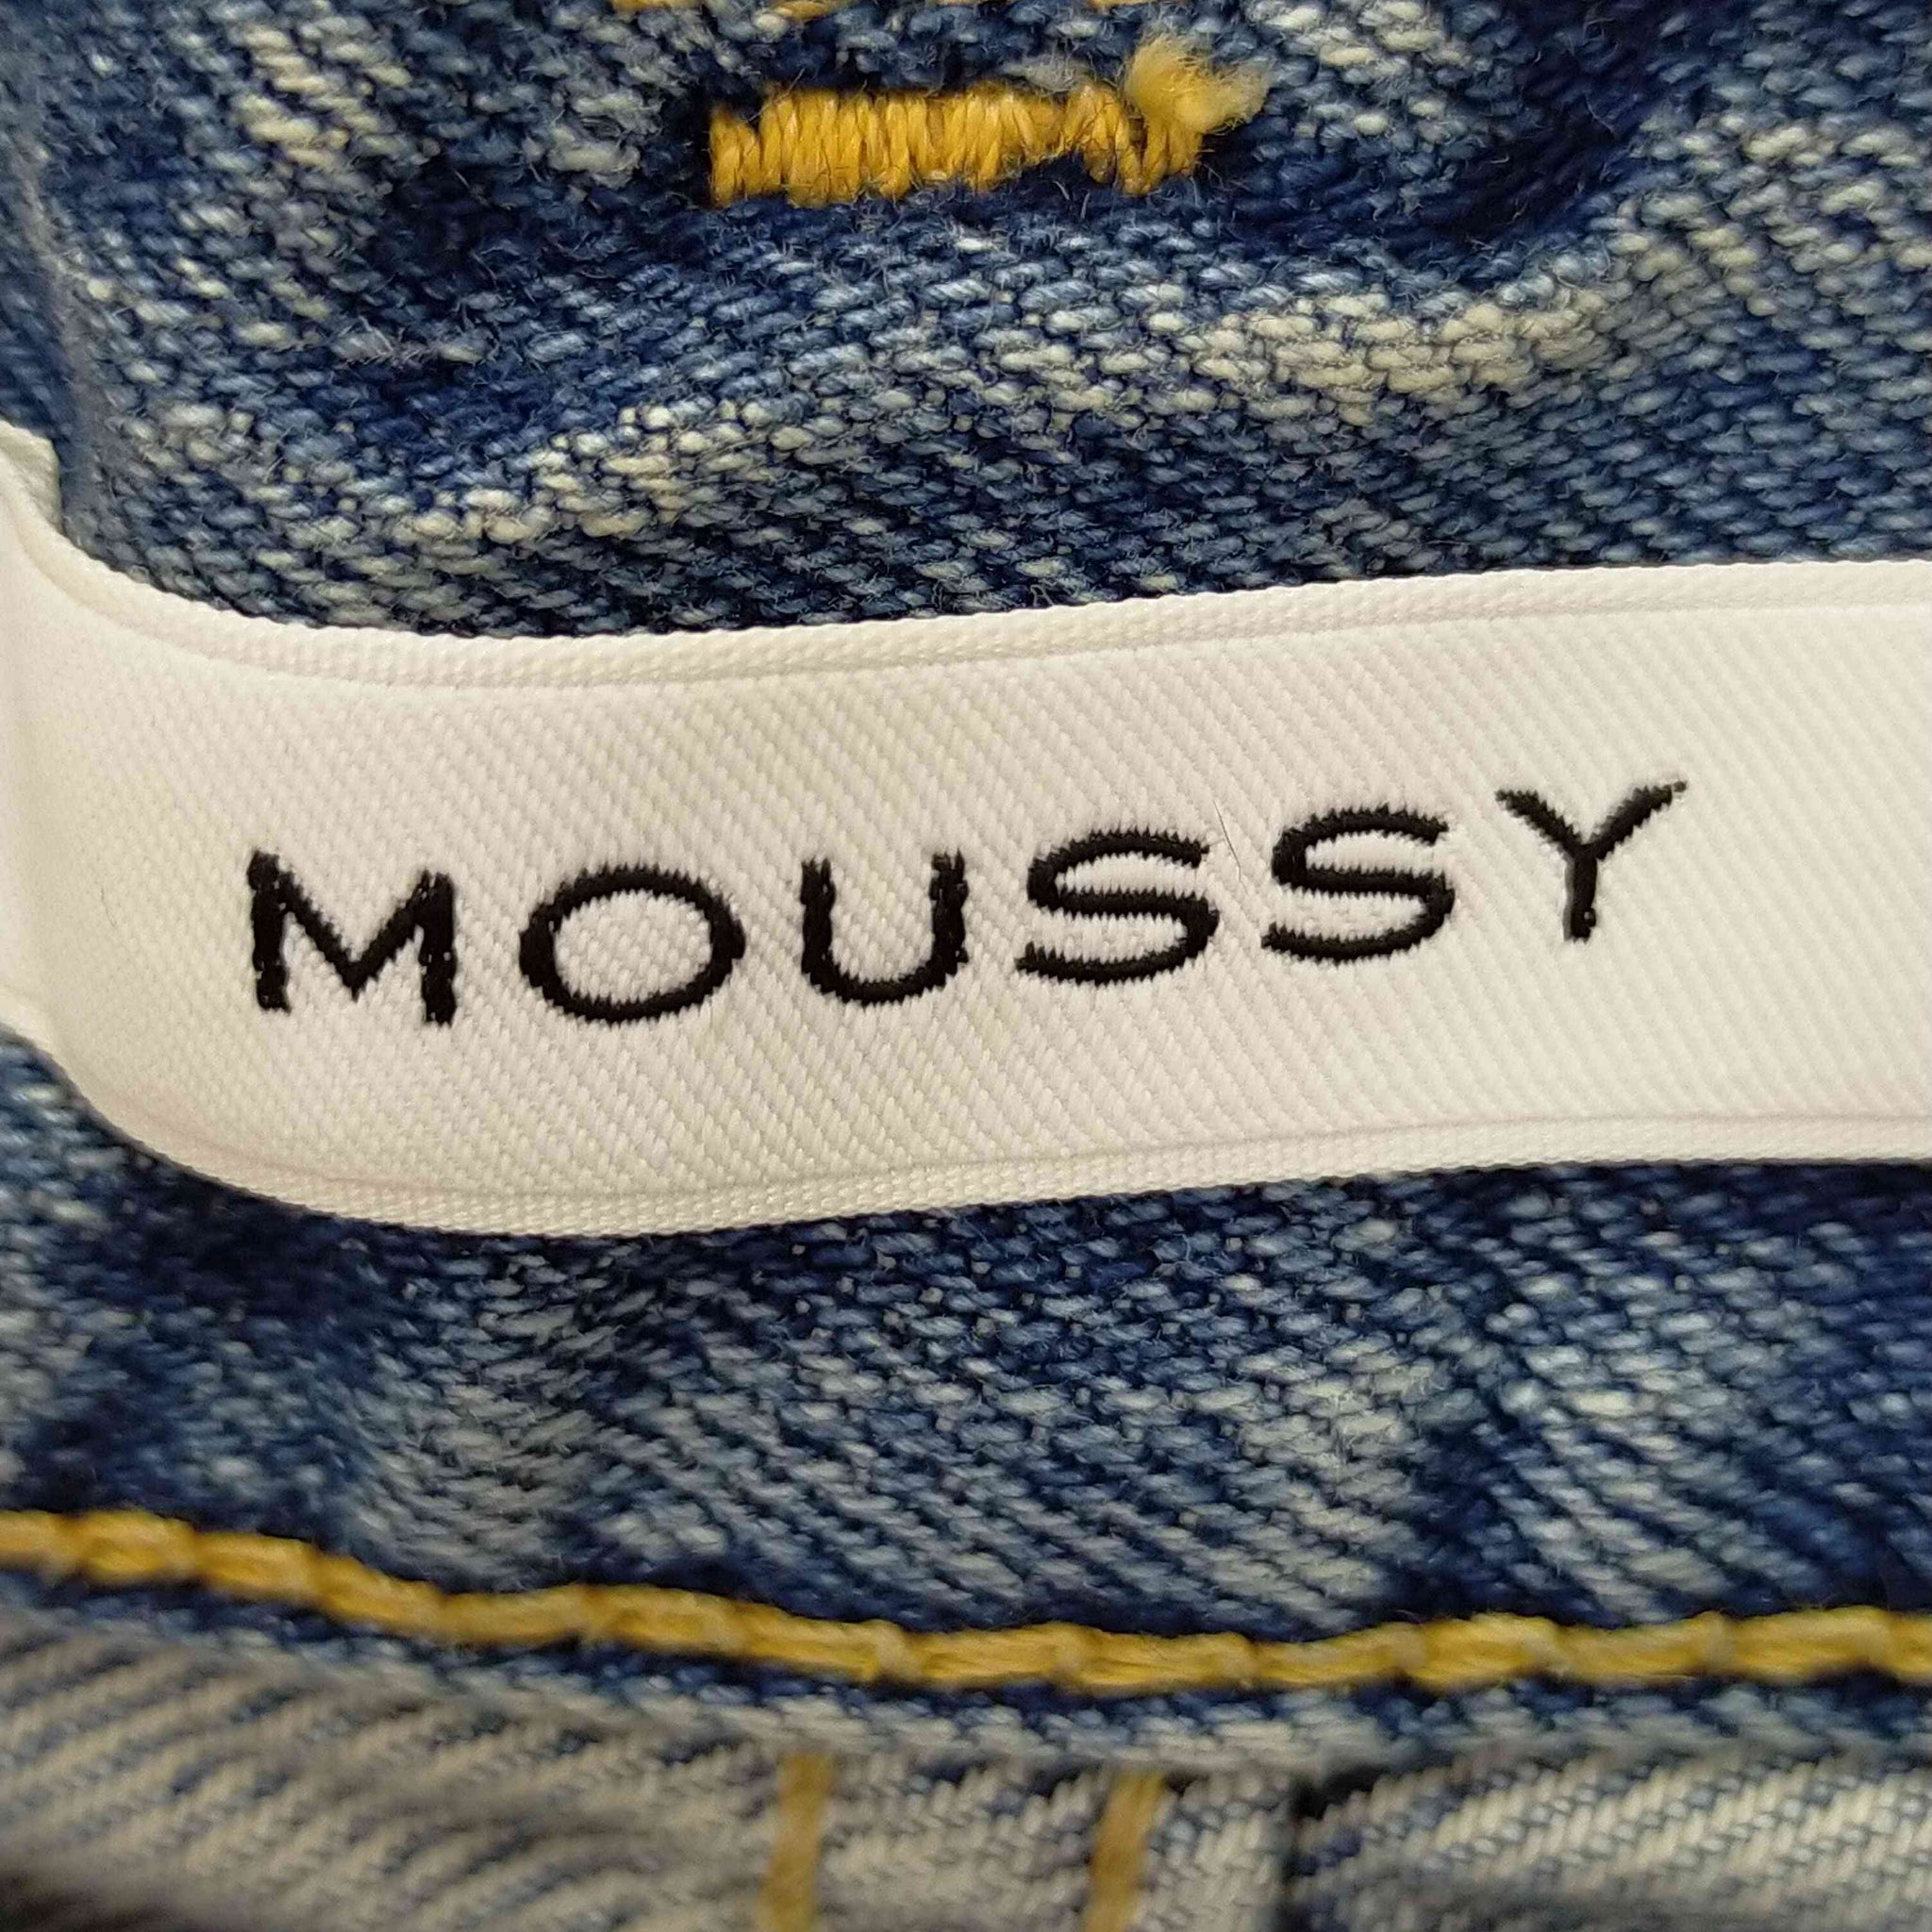 moussy(マウジー)クラッシュデニム テーパード パンツ – サステナブル